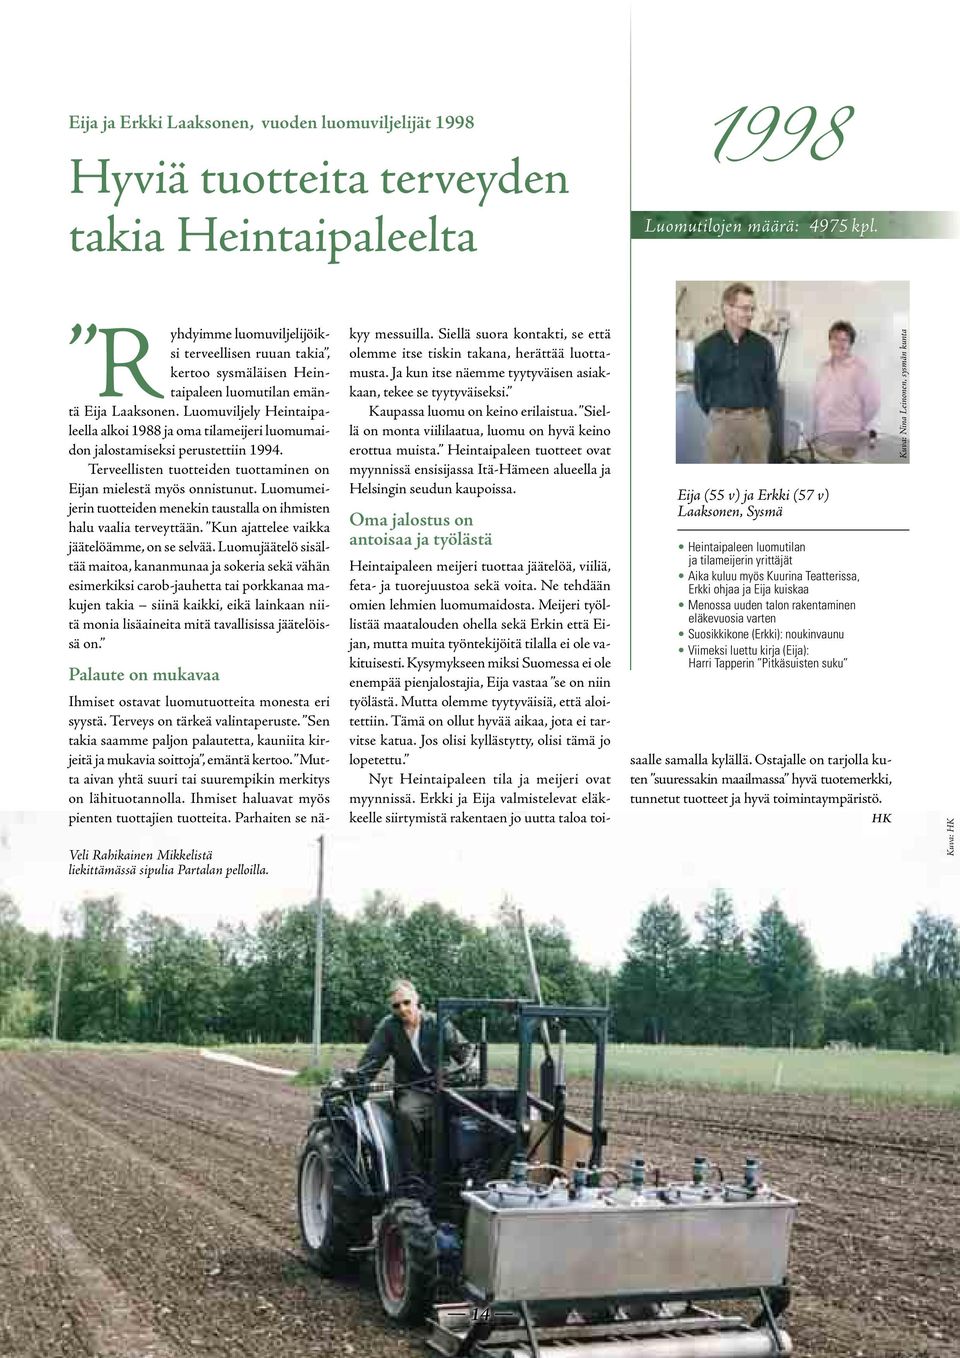 Luomuviljely Heintaipaleella alkoi 1988 ja oma tilameijeri luomumaidon jalostamiseksi perustettiin 1994. Terveellisten tuotteiden tuottaminen on Eijan mielestä myös onnistunut.